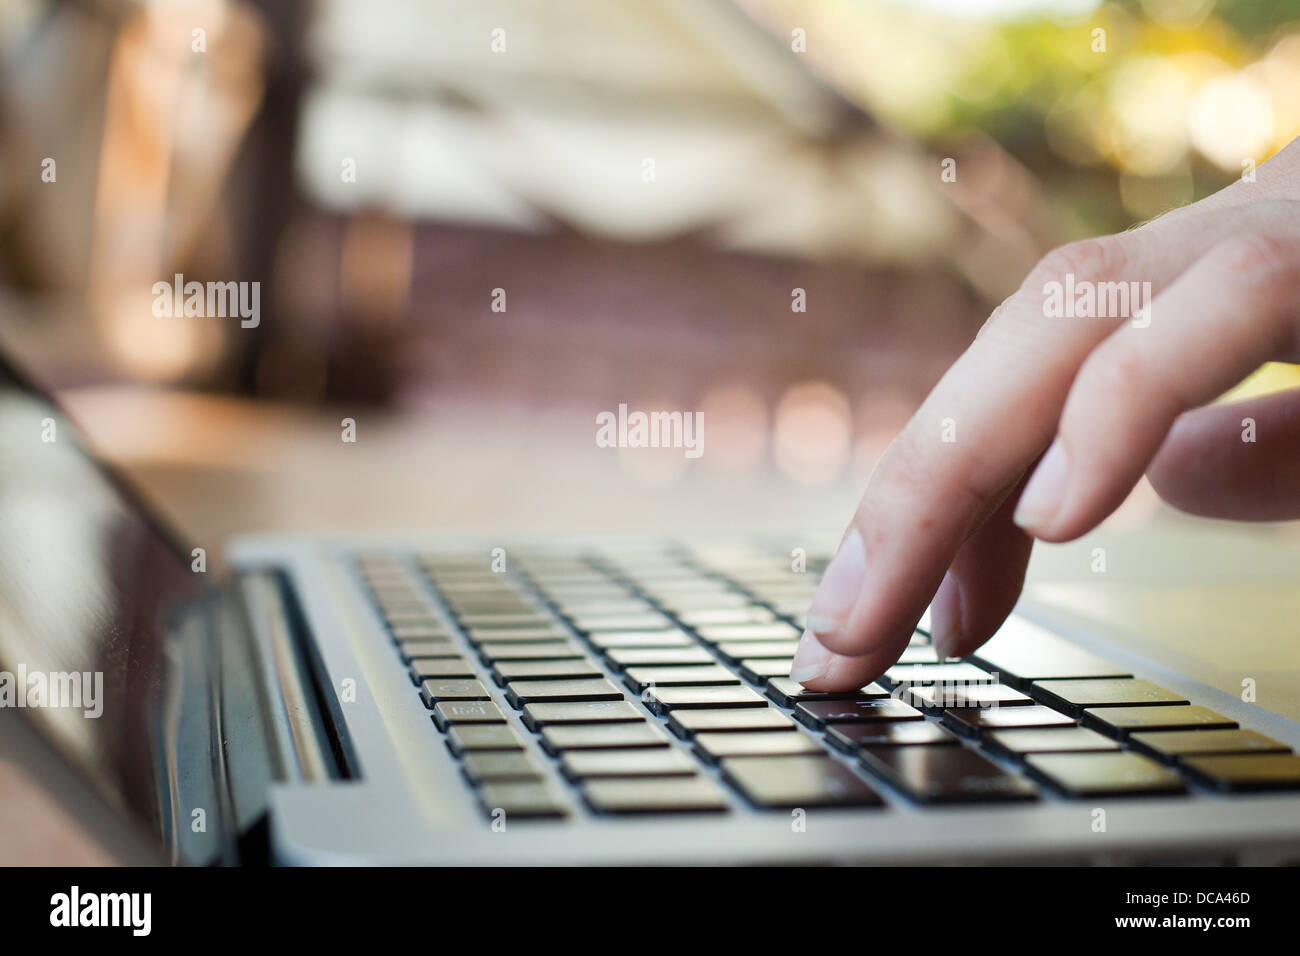 La technologie, les doigts toucher le clavier Banque D'Images